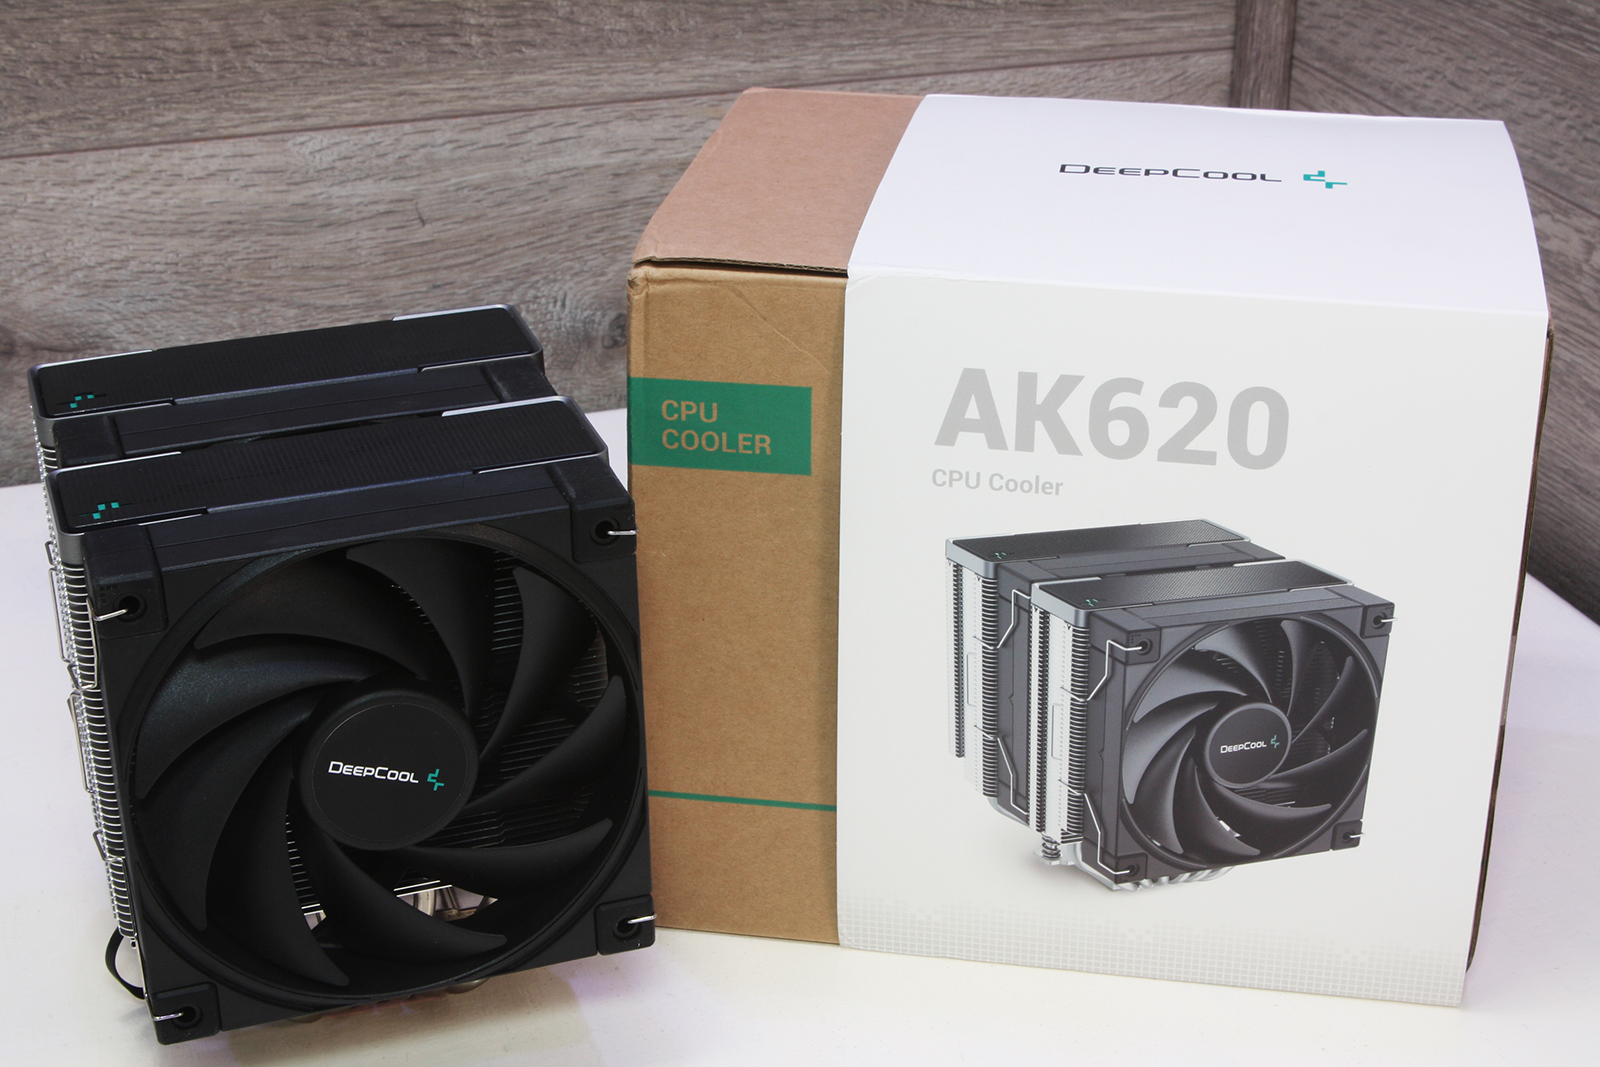 Buy the DEEPCOOL AK620 Black Digital CPU Cooler 2x 120mm Fans